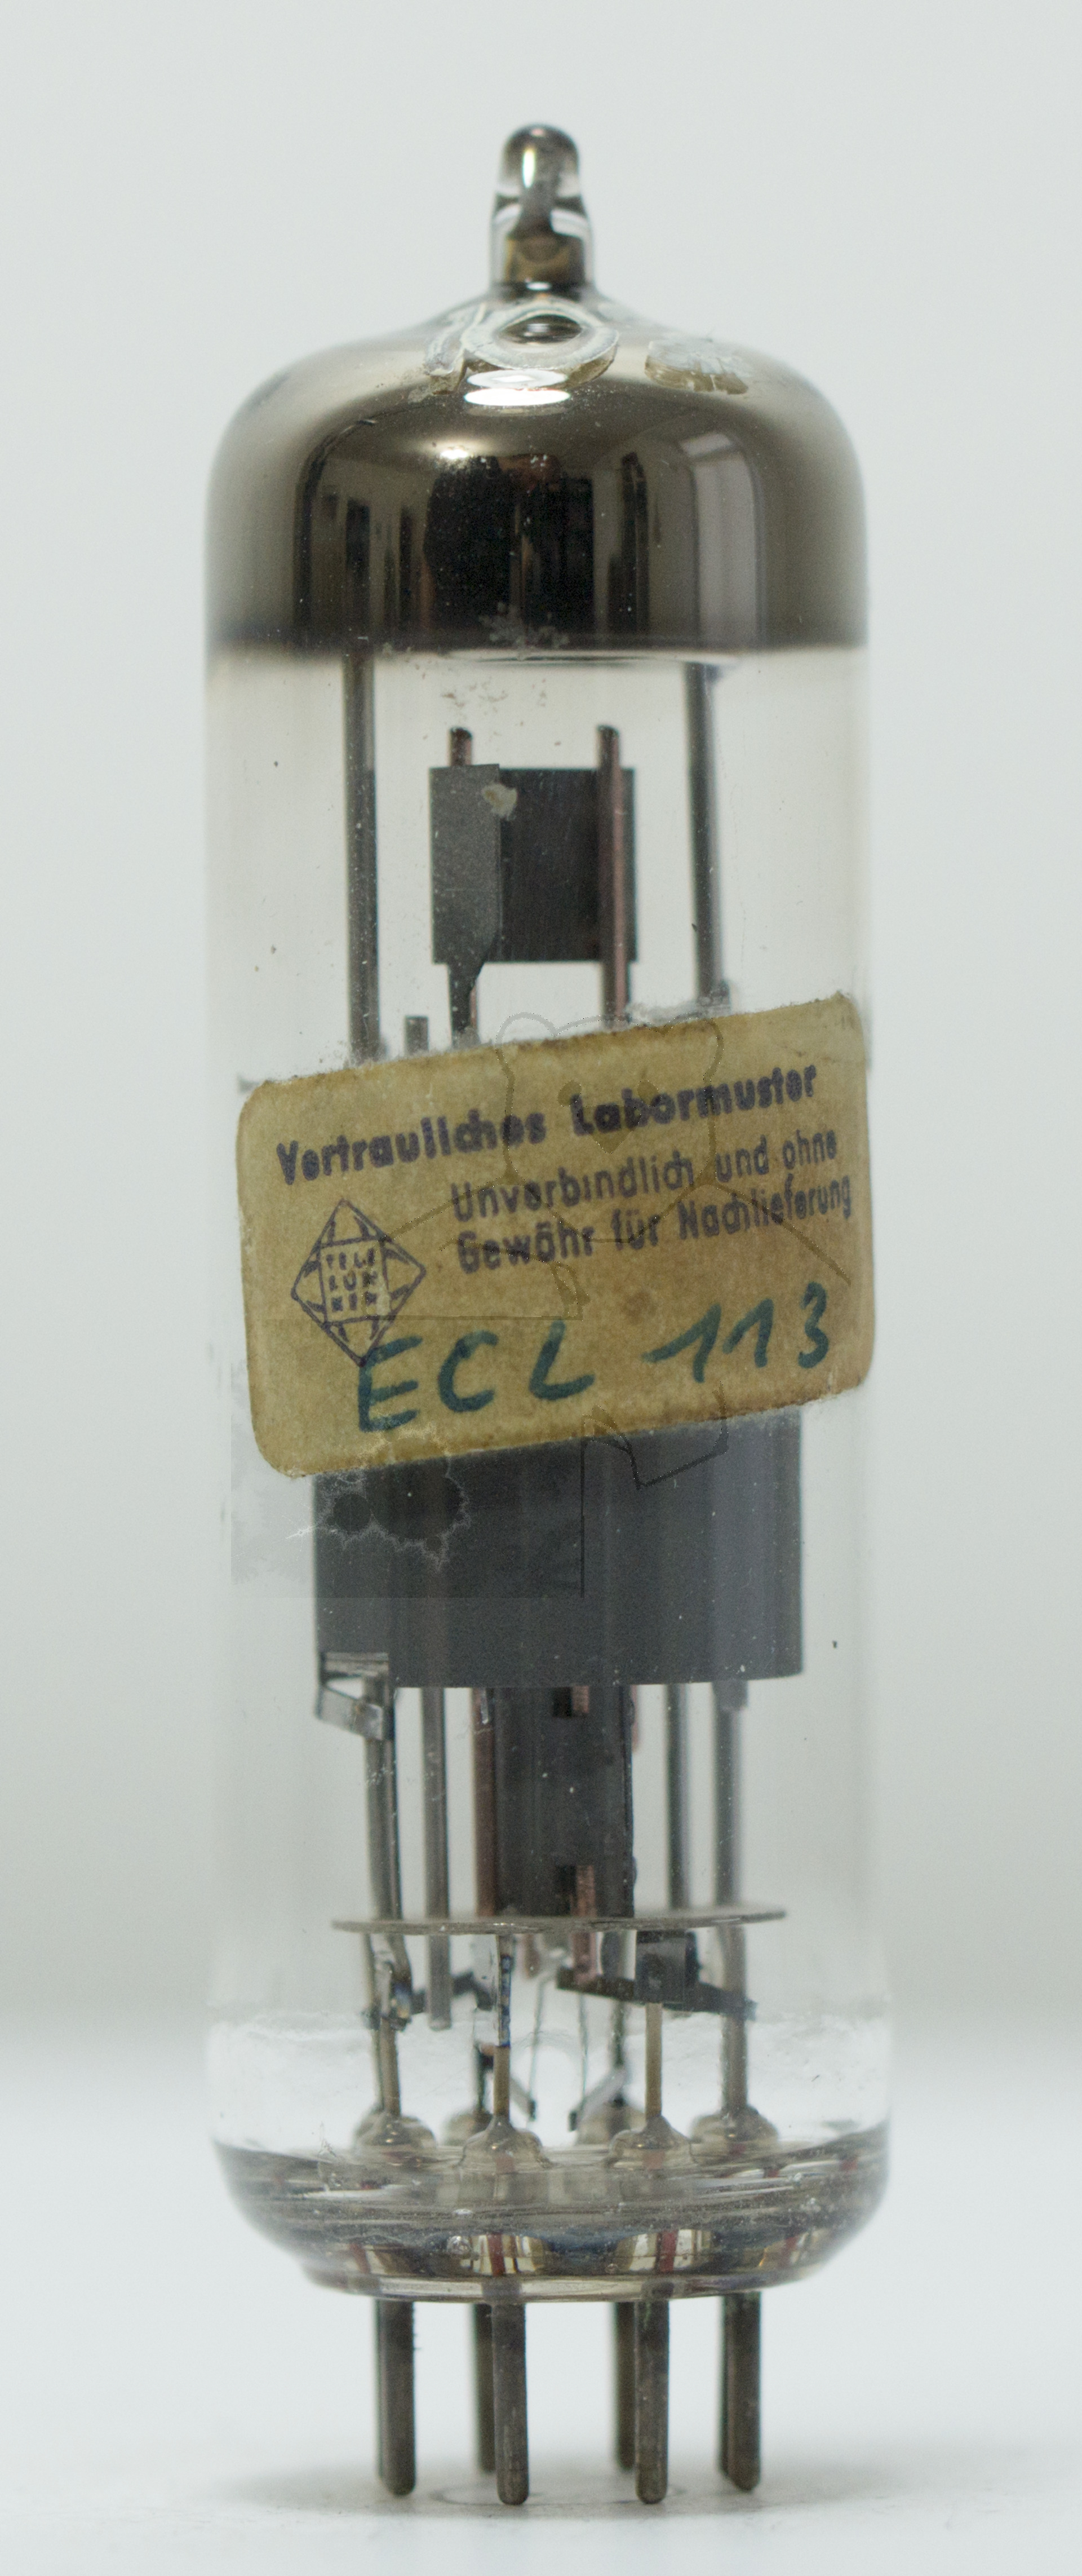 Röhre ECL113 #7250 Bild 1 - Vertrauliches Labormuster